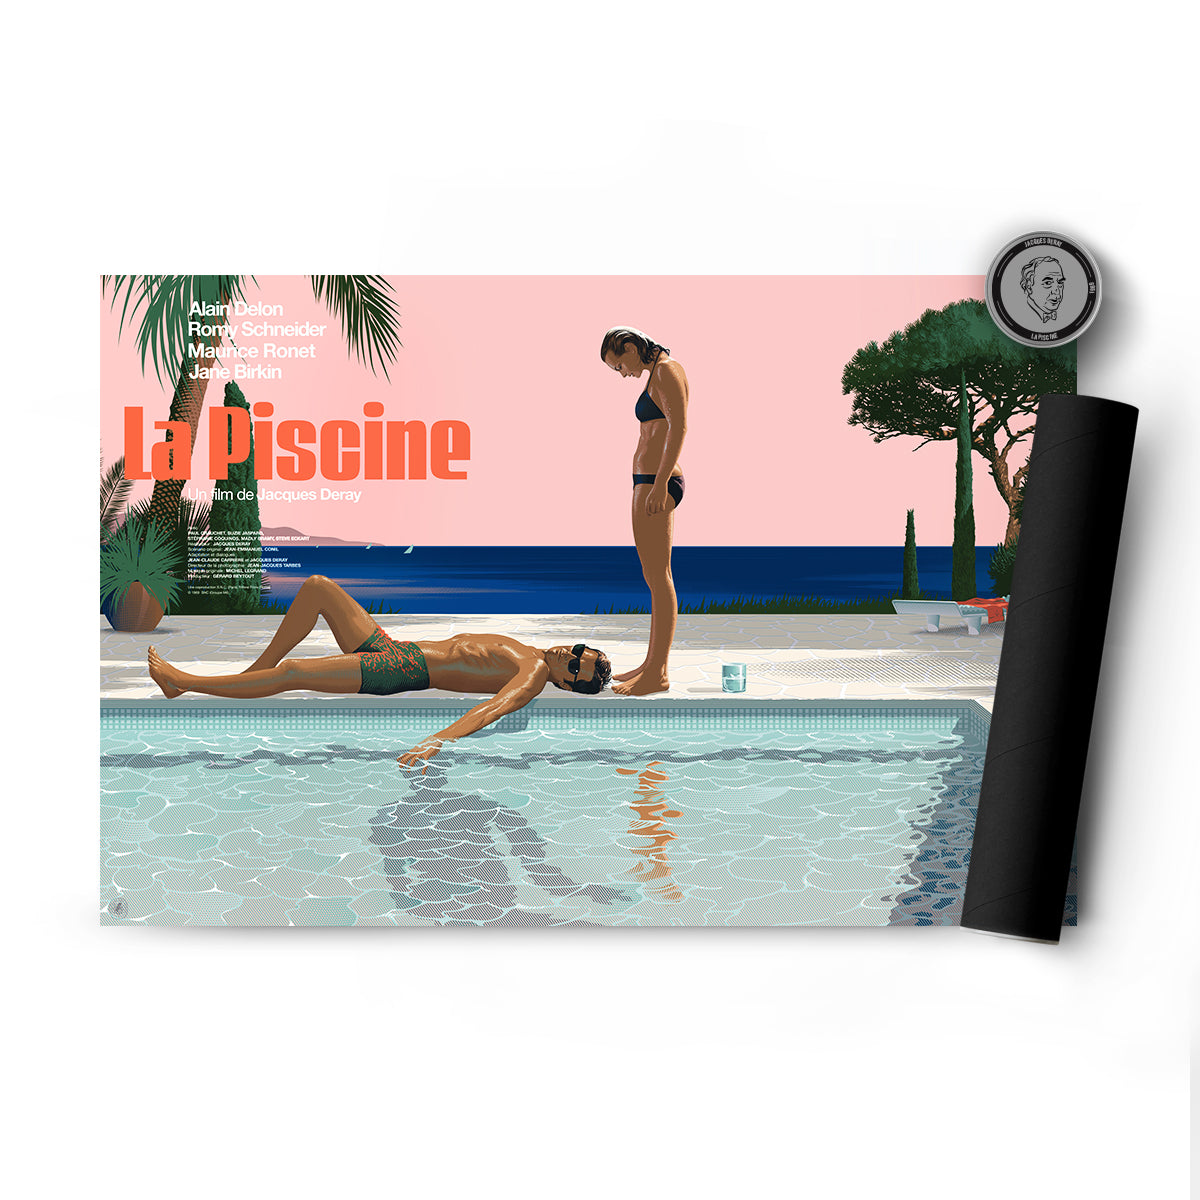 plakat - maison d'edition d'affiche en sérigraphie - affiche de cinema la piscine réalisée par Laurent durieux - imprimée en edition limitée numérotee main